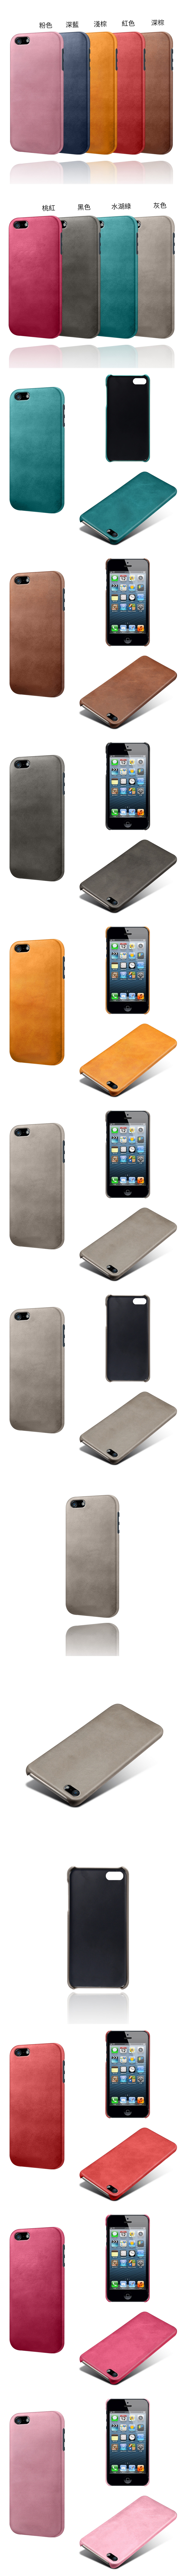 IPhone5 IPhone5s i5 i5s 皮革保護殼(PLAIN) - 牛皮仿真皮紋單色背蓋素色多色手機殼保護套手機套